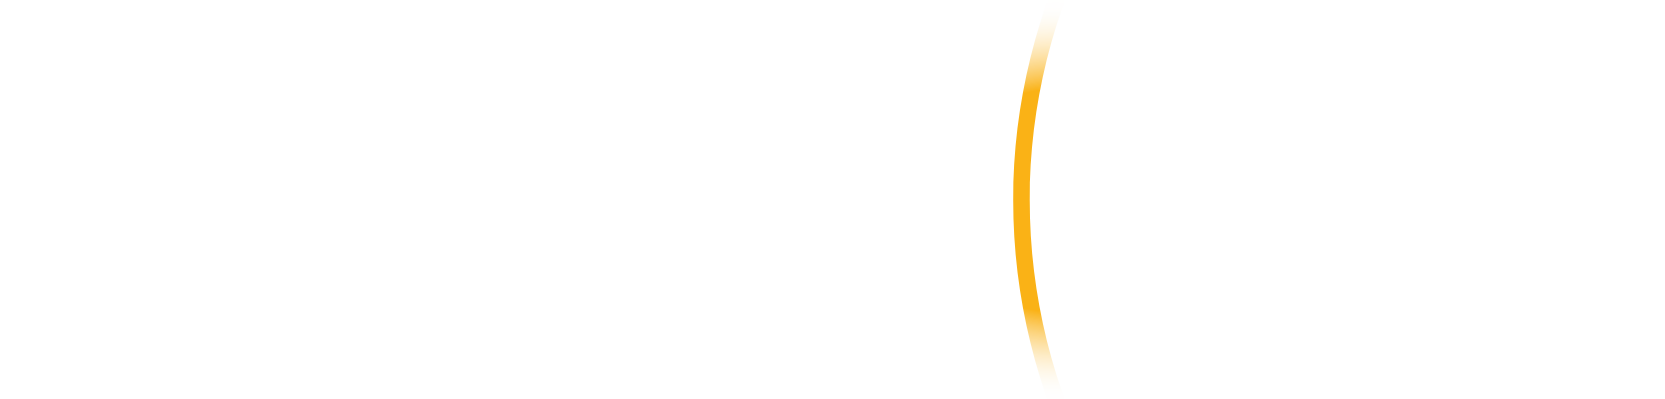 BlackSky Technology logo large for dark backgrounds (transparent PNG)